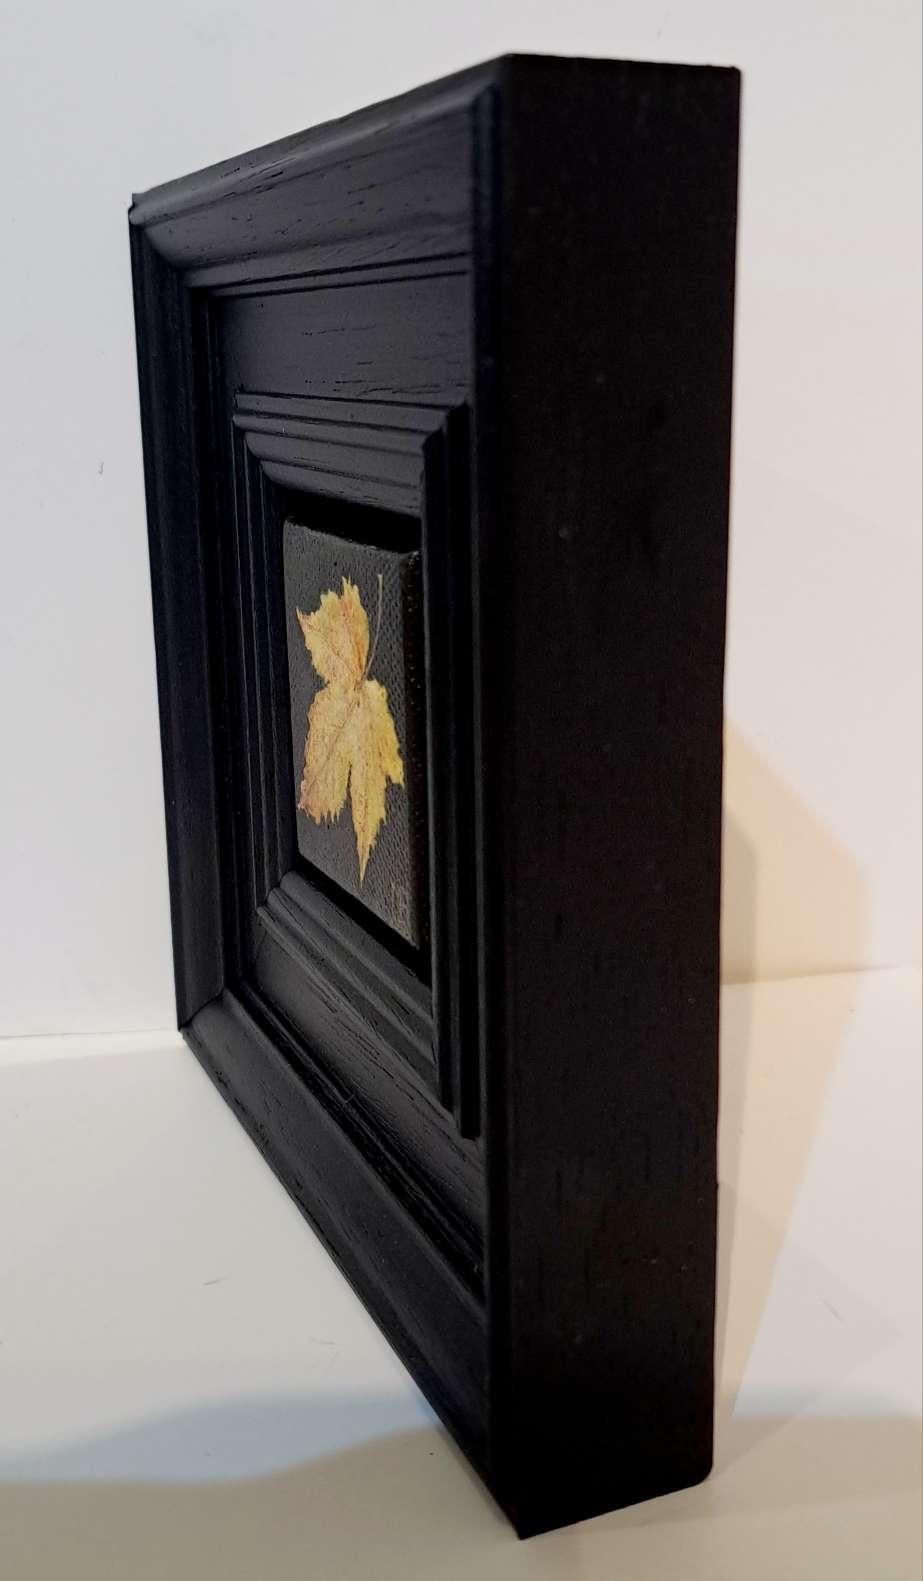 Pocket Autumn Leaf Collection #2 (Naples Yellow) est une peinture à l'huile originale de Dani Humberstone qui fait partie de sa série Pocket Painting, composée de peintures à l'huile réalistes à petite échelle, avec un clin d'œil aux natures mortes